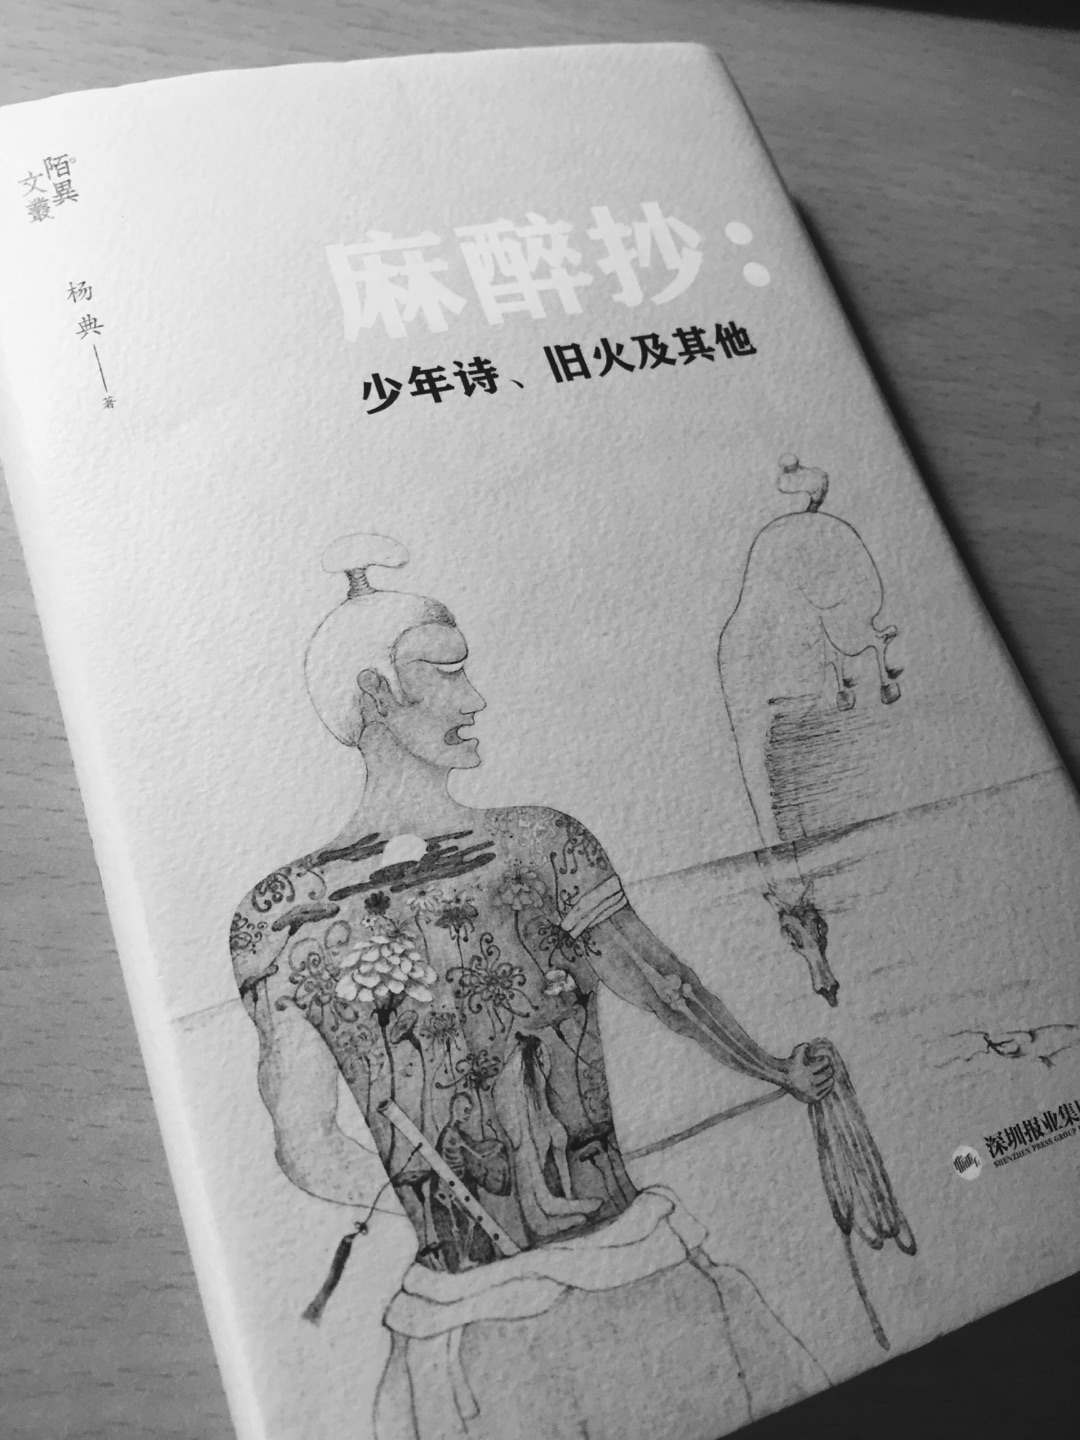 期待已久的书。选题非常好，介绍了三岛由纪夫和永山则夫的诗。非常非常喜欢。